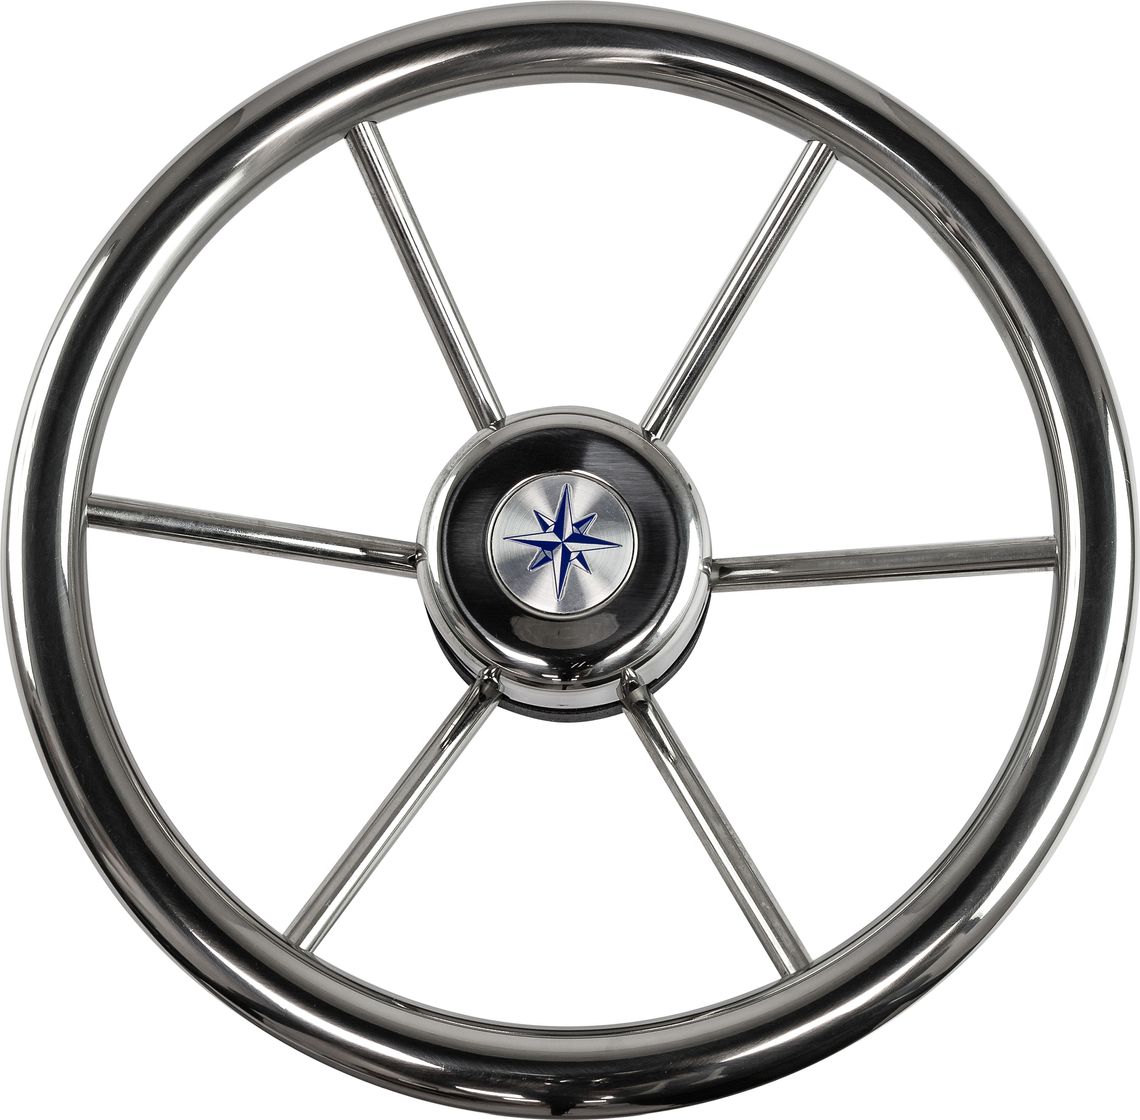 Рулевое колесо LEADER INOX нержавеющий обод серебряные спицы д. 320 мм VN7332-22 колесо для двухколесной тачки variant 12410 3 25 3 00 8 к99 2с камерное с подшипником 20 мм обод металл